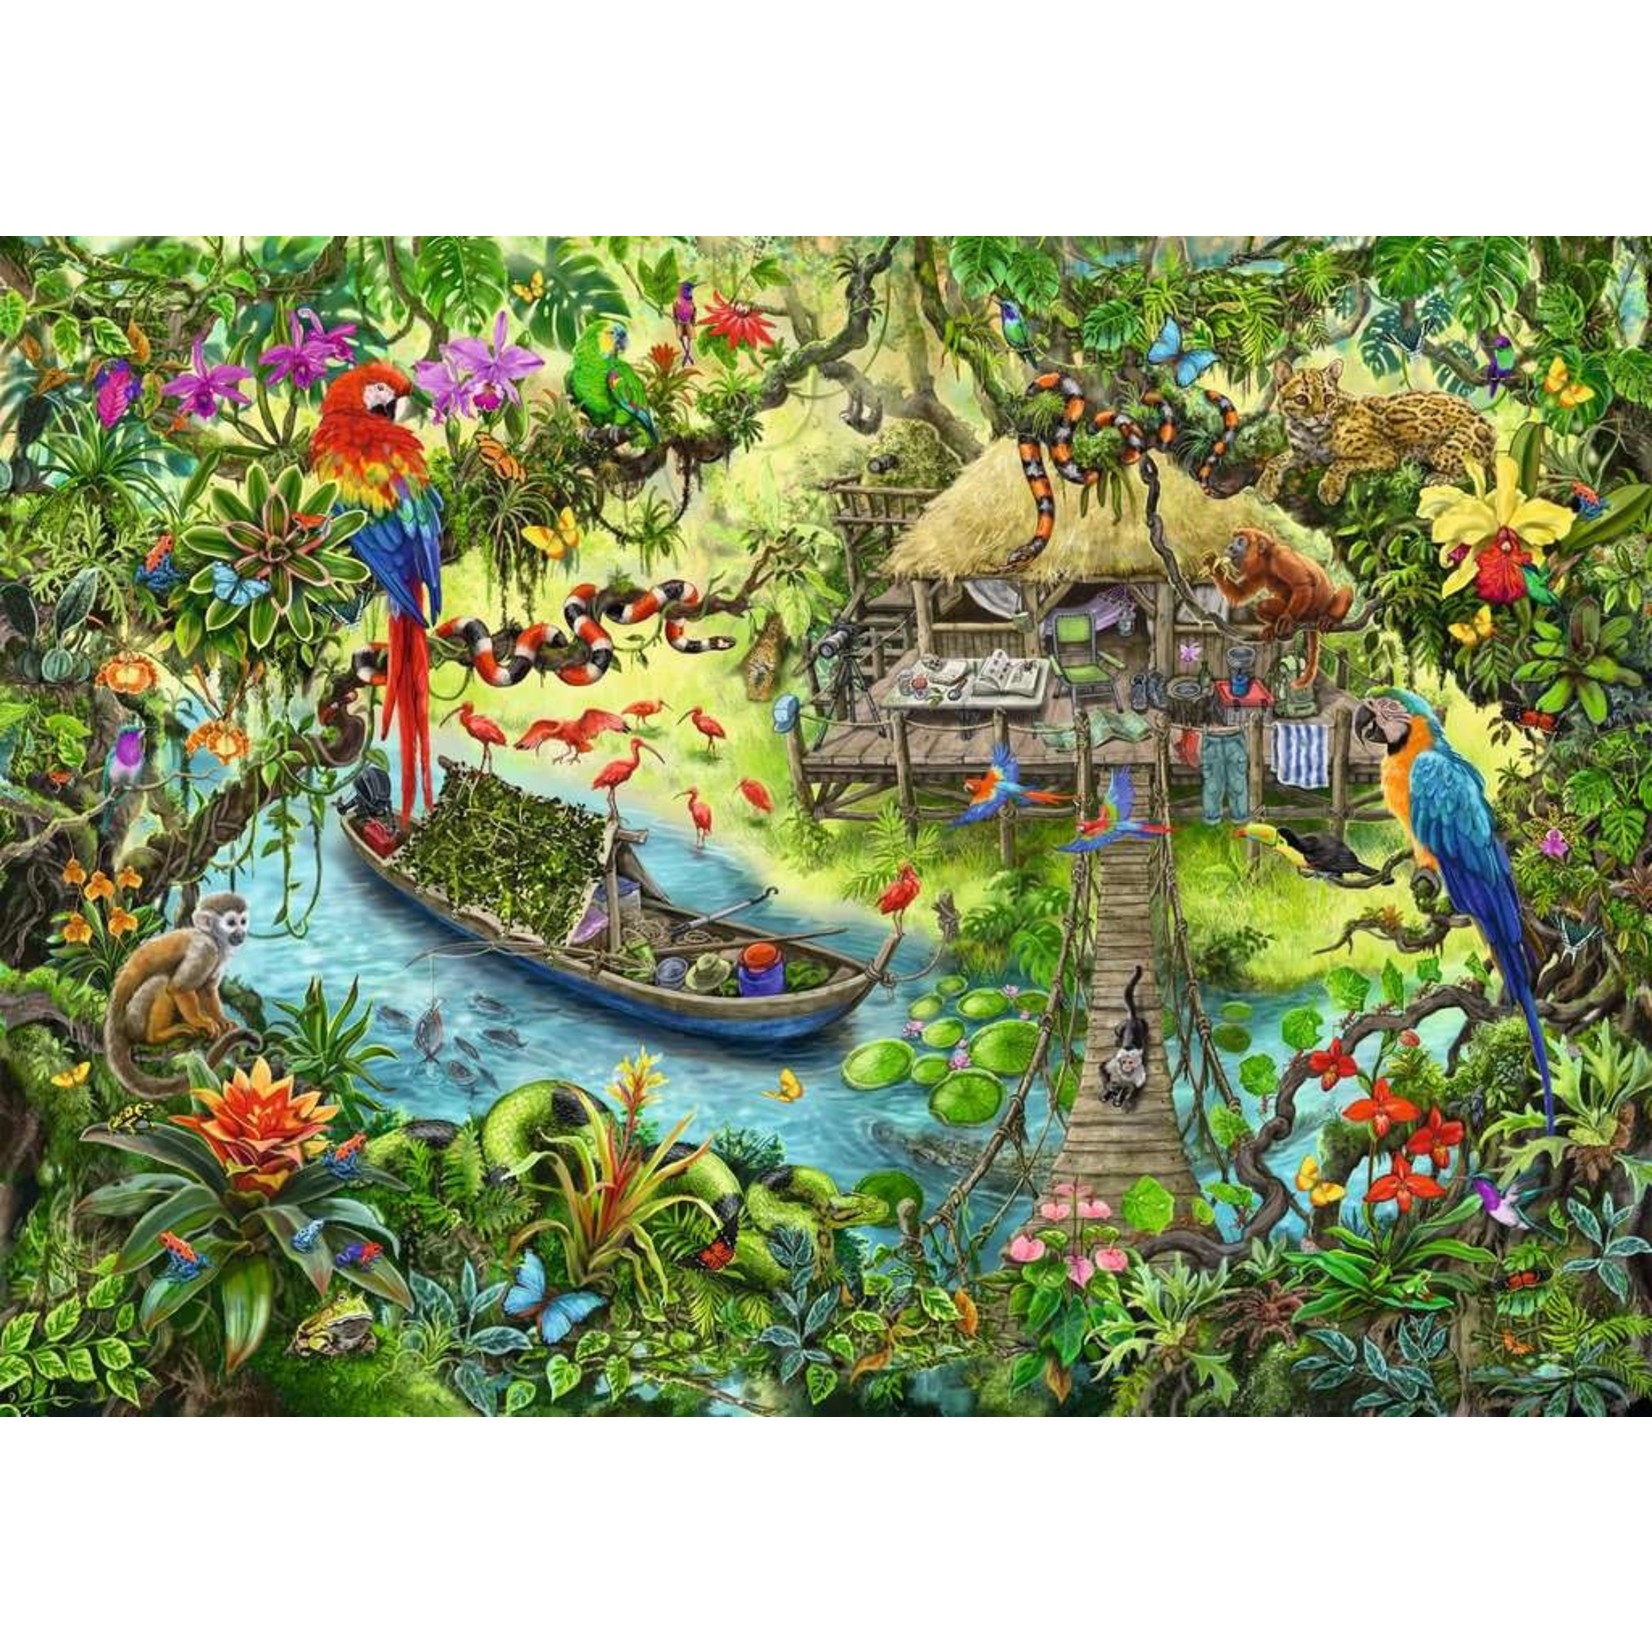 Jungle Journey Escape 368 Piece Puzzle